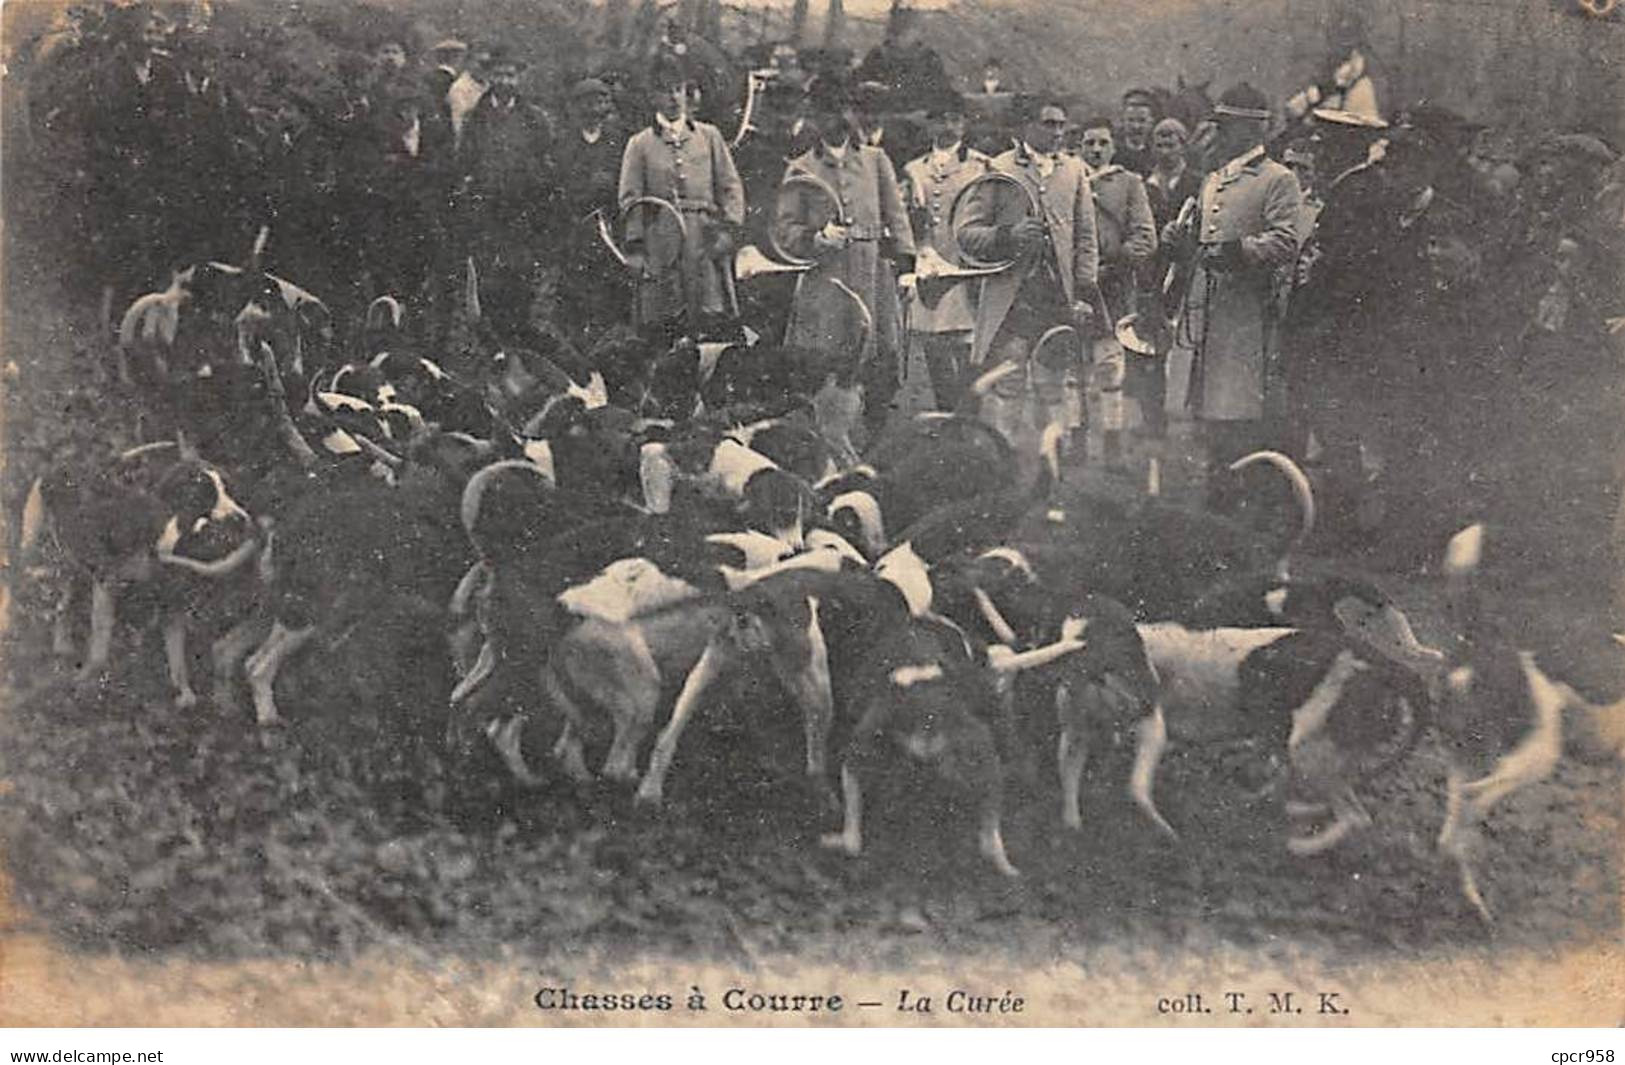 CHASSE - SAN37938 - Chasses à Courre - La Curée - Jagd